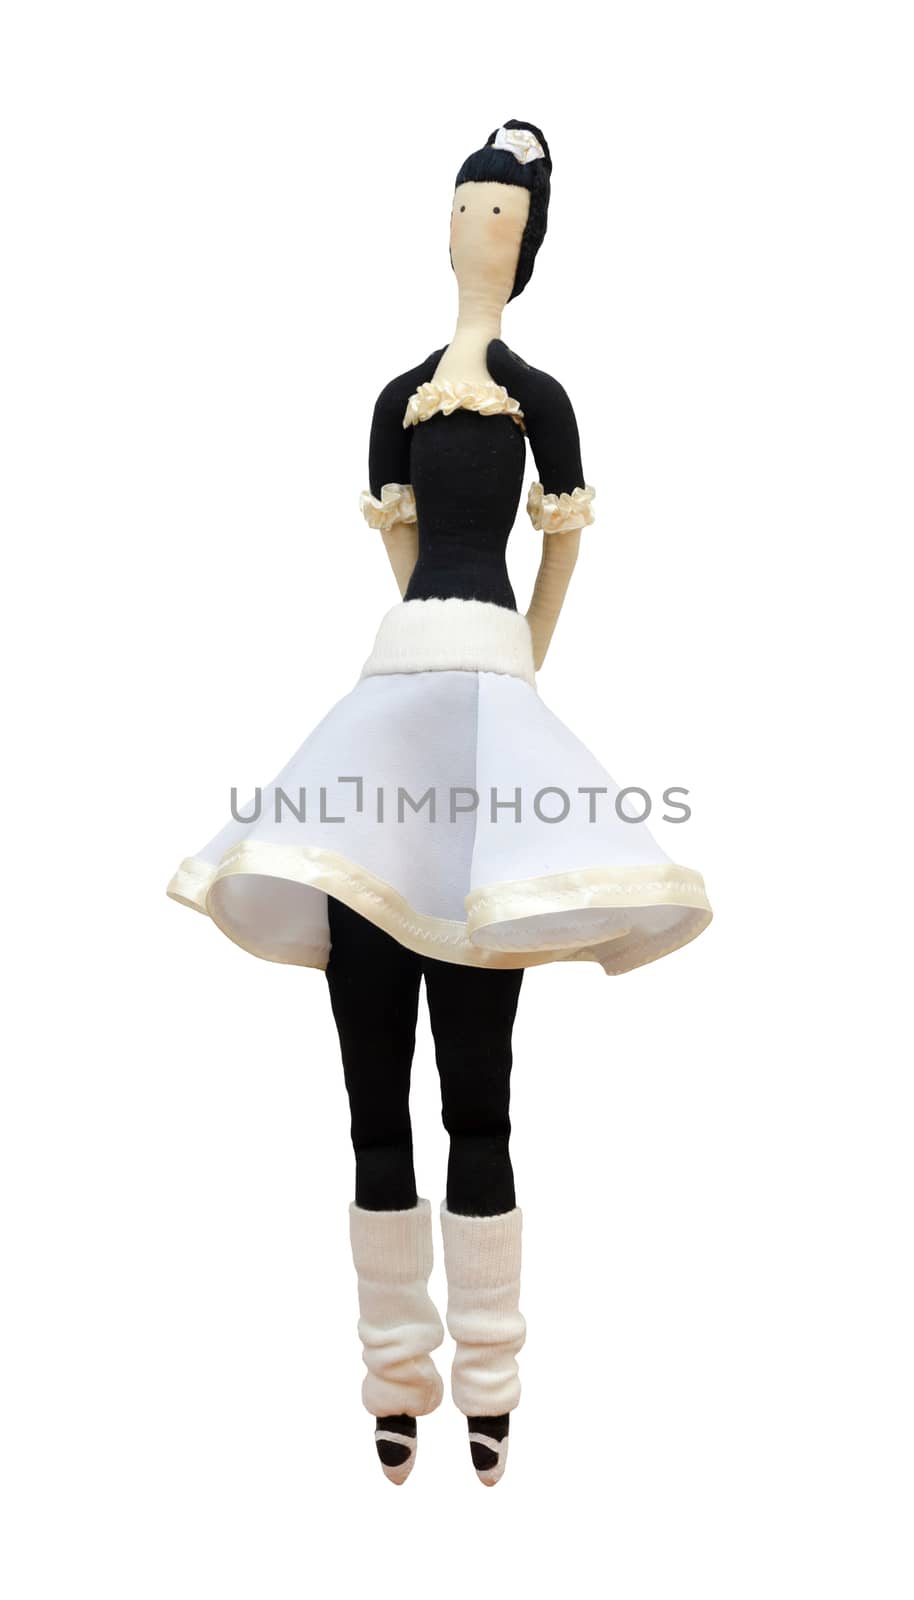 FS-Handmade isolated doll ballerina in white skirt by pt-home